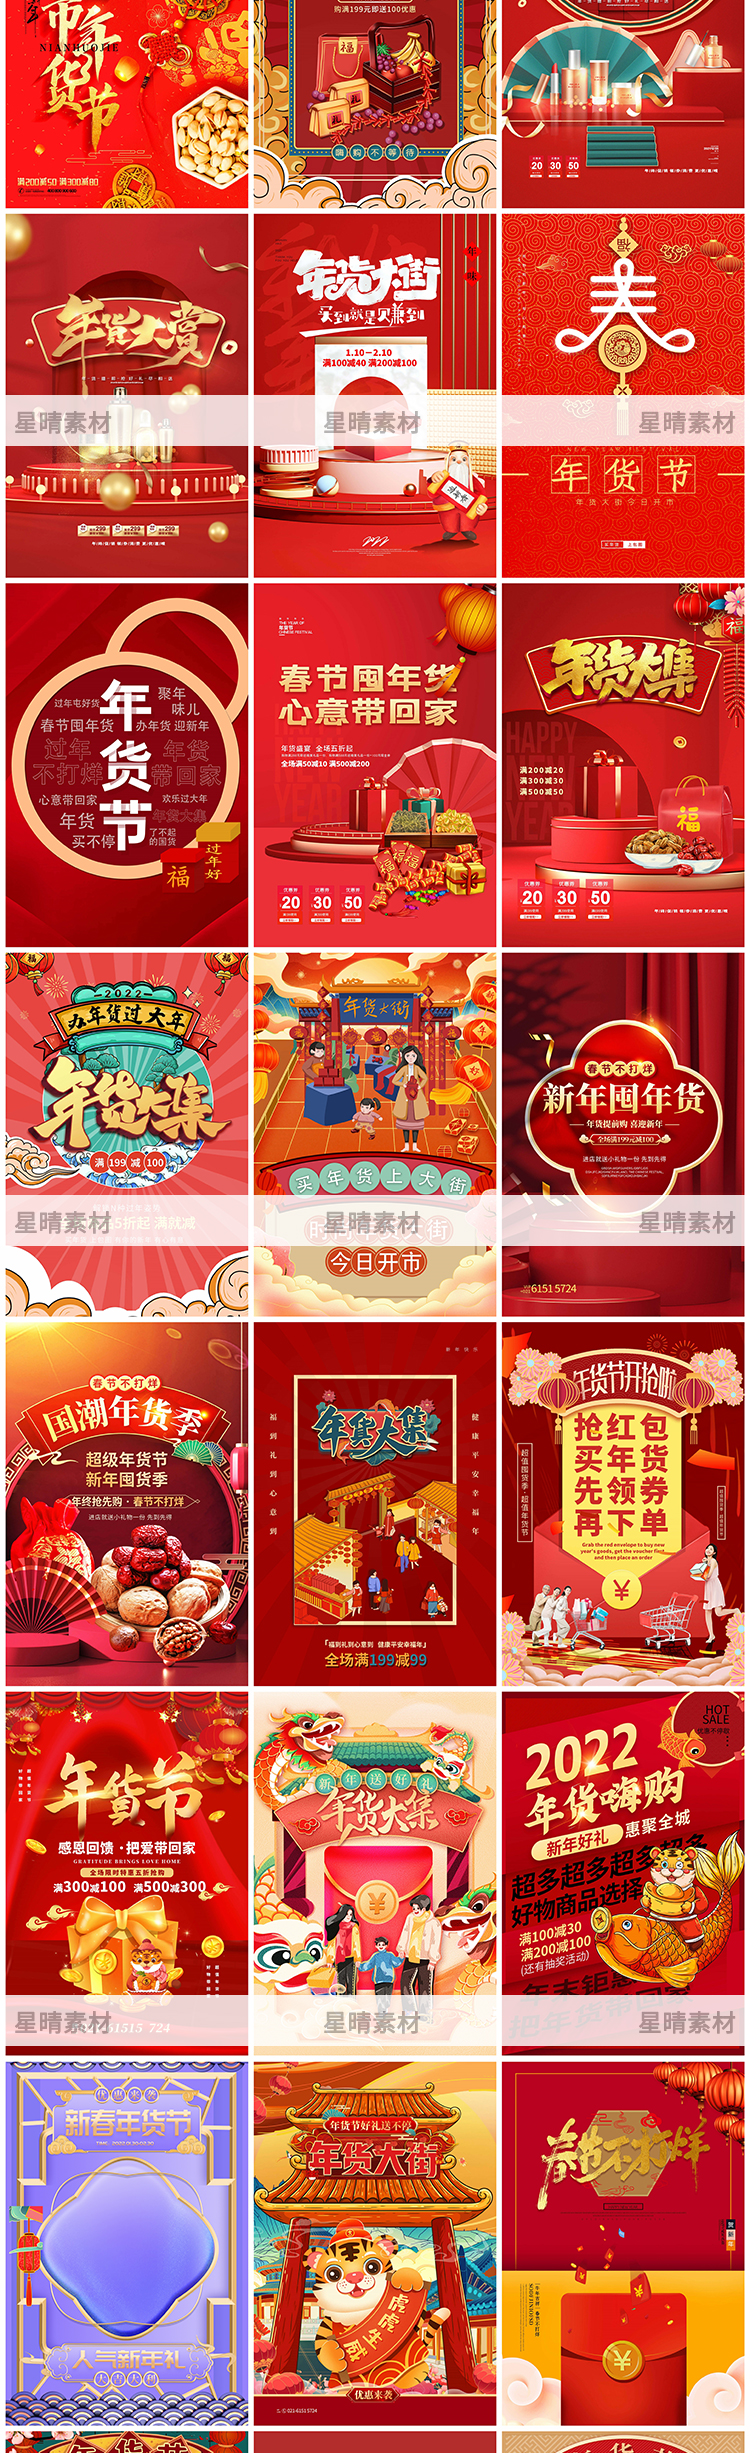 2022年货春节电商购物宣传促销海报psd设计素材插图1